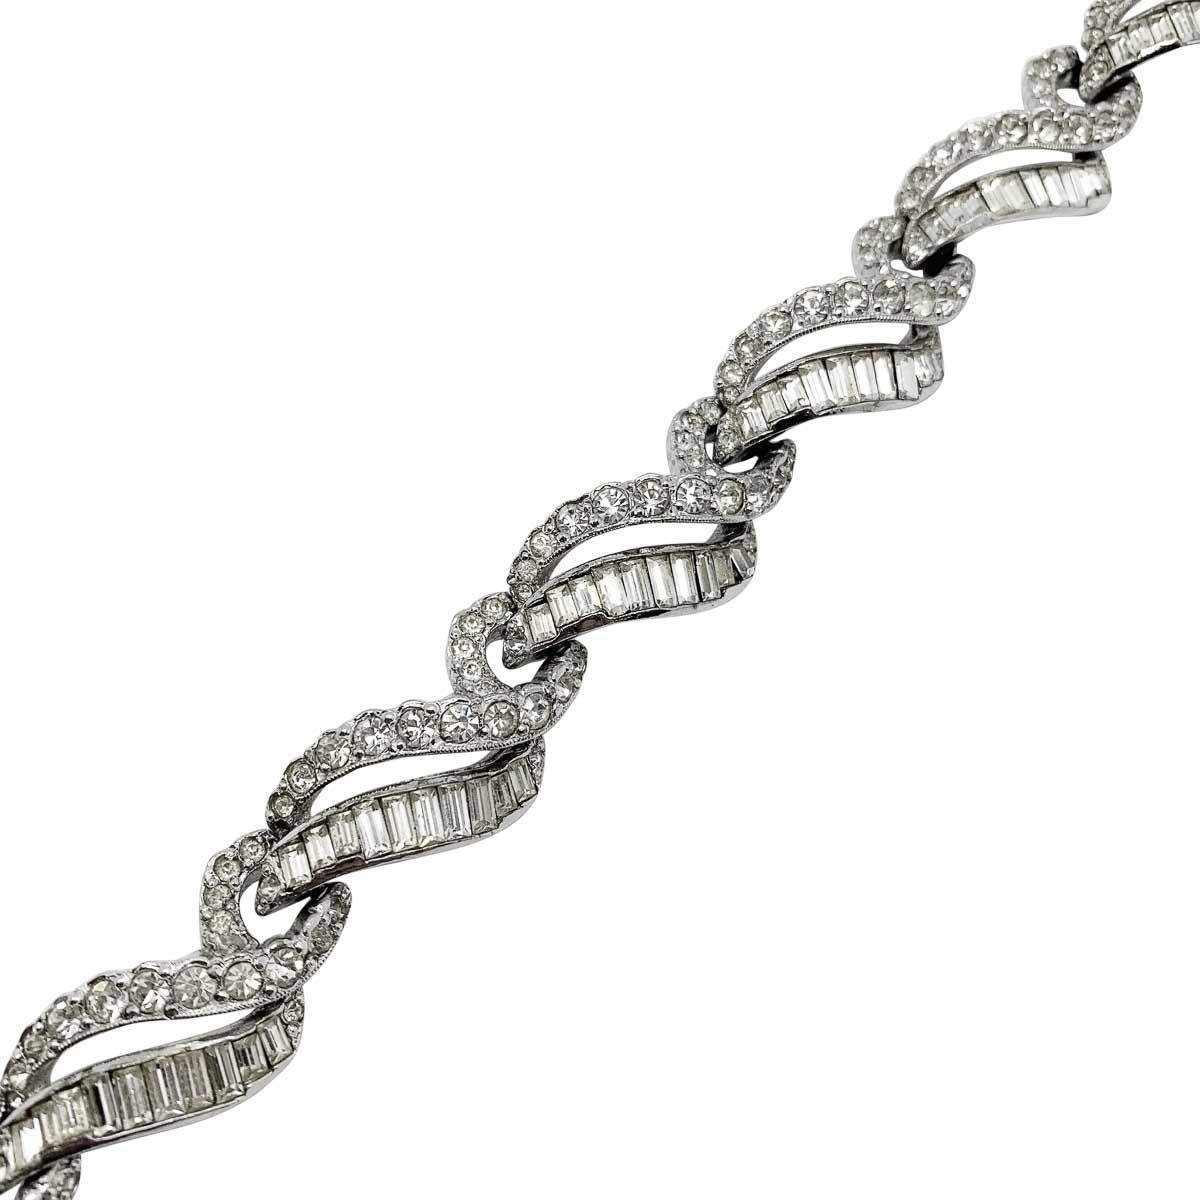 Un rare et magnifique bracelet vintage Mitchel Maer. Ce modèle de style déco est serti de cristaux fantaisie en métal plaqué rhodium. Cet adorable bracelet vintage Mitchel Maer aurait été fabriqué à Londres, en Angleterre, au début des années 1950.